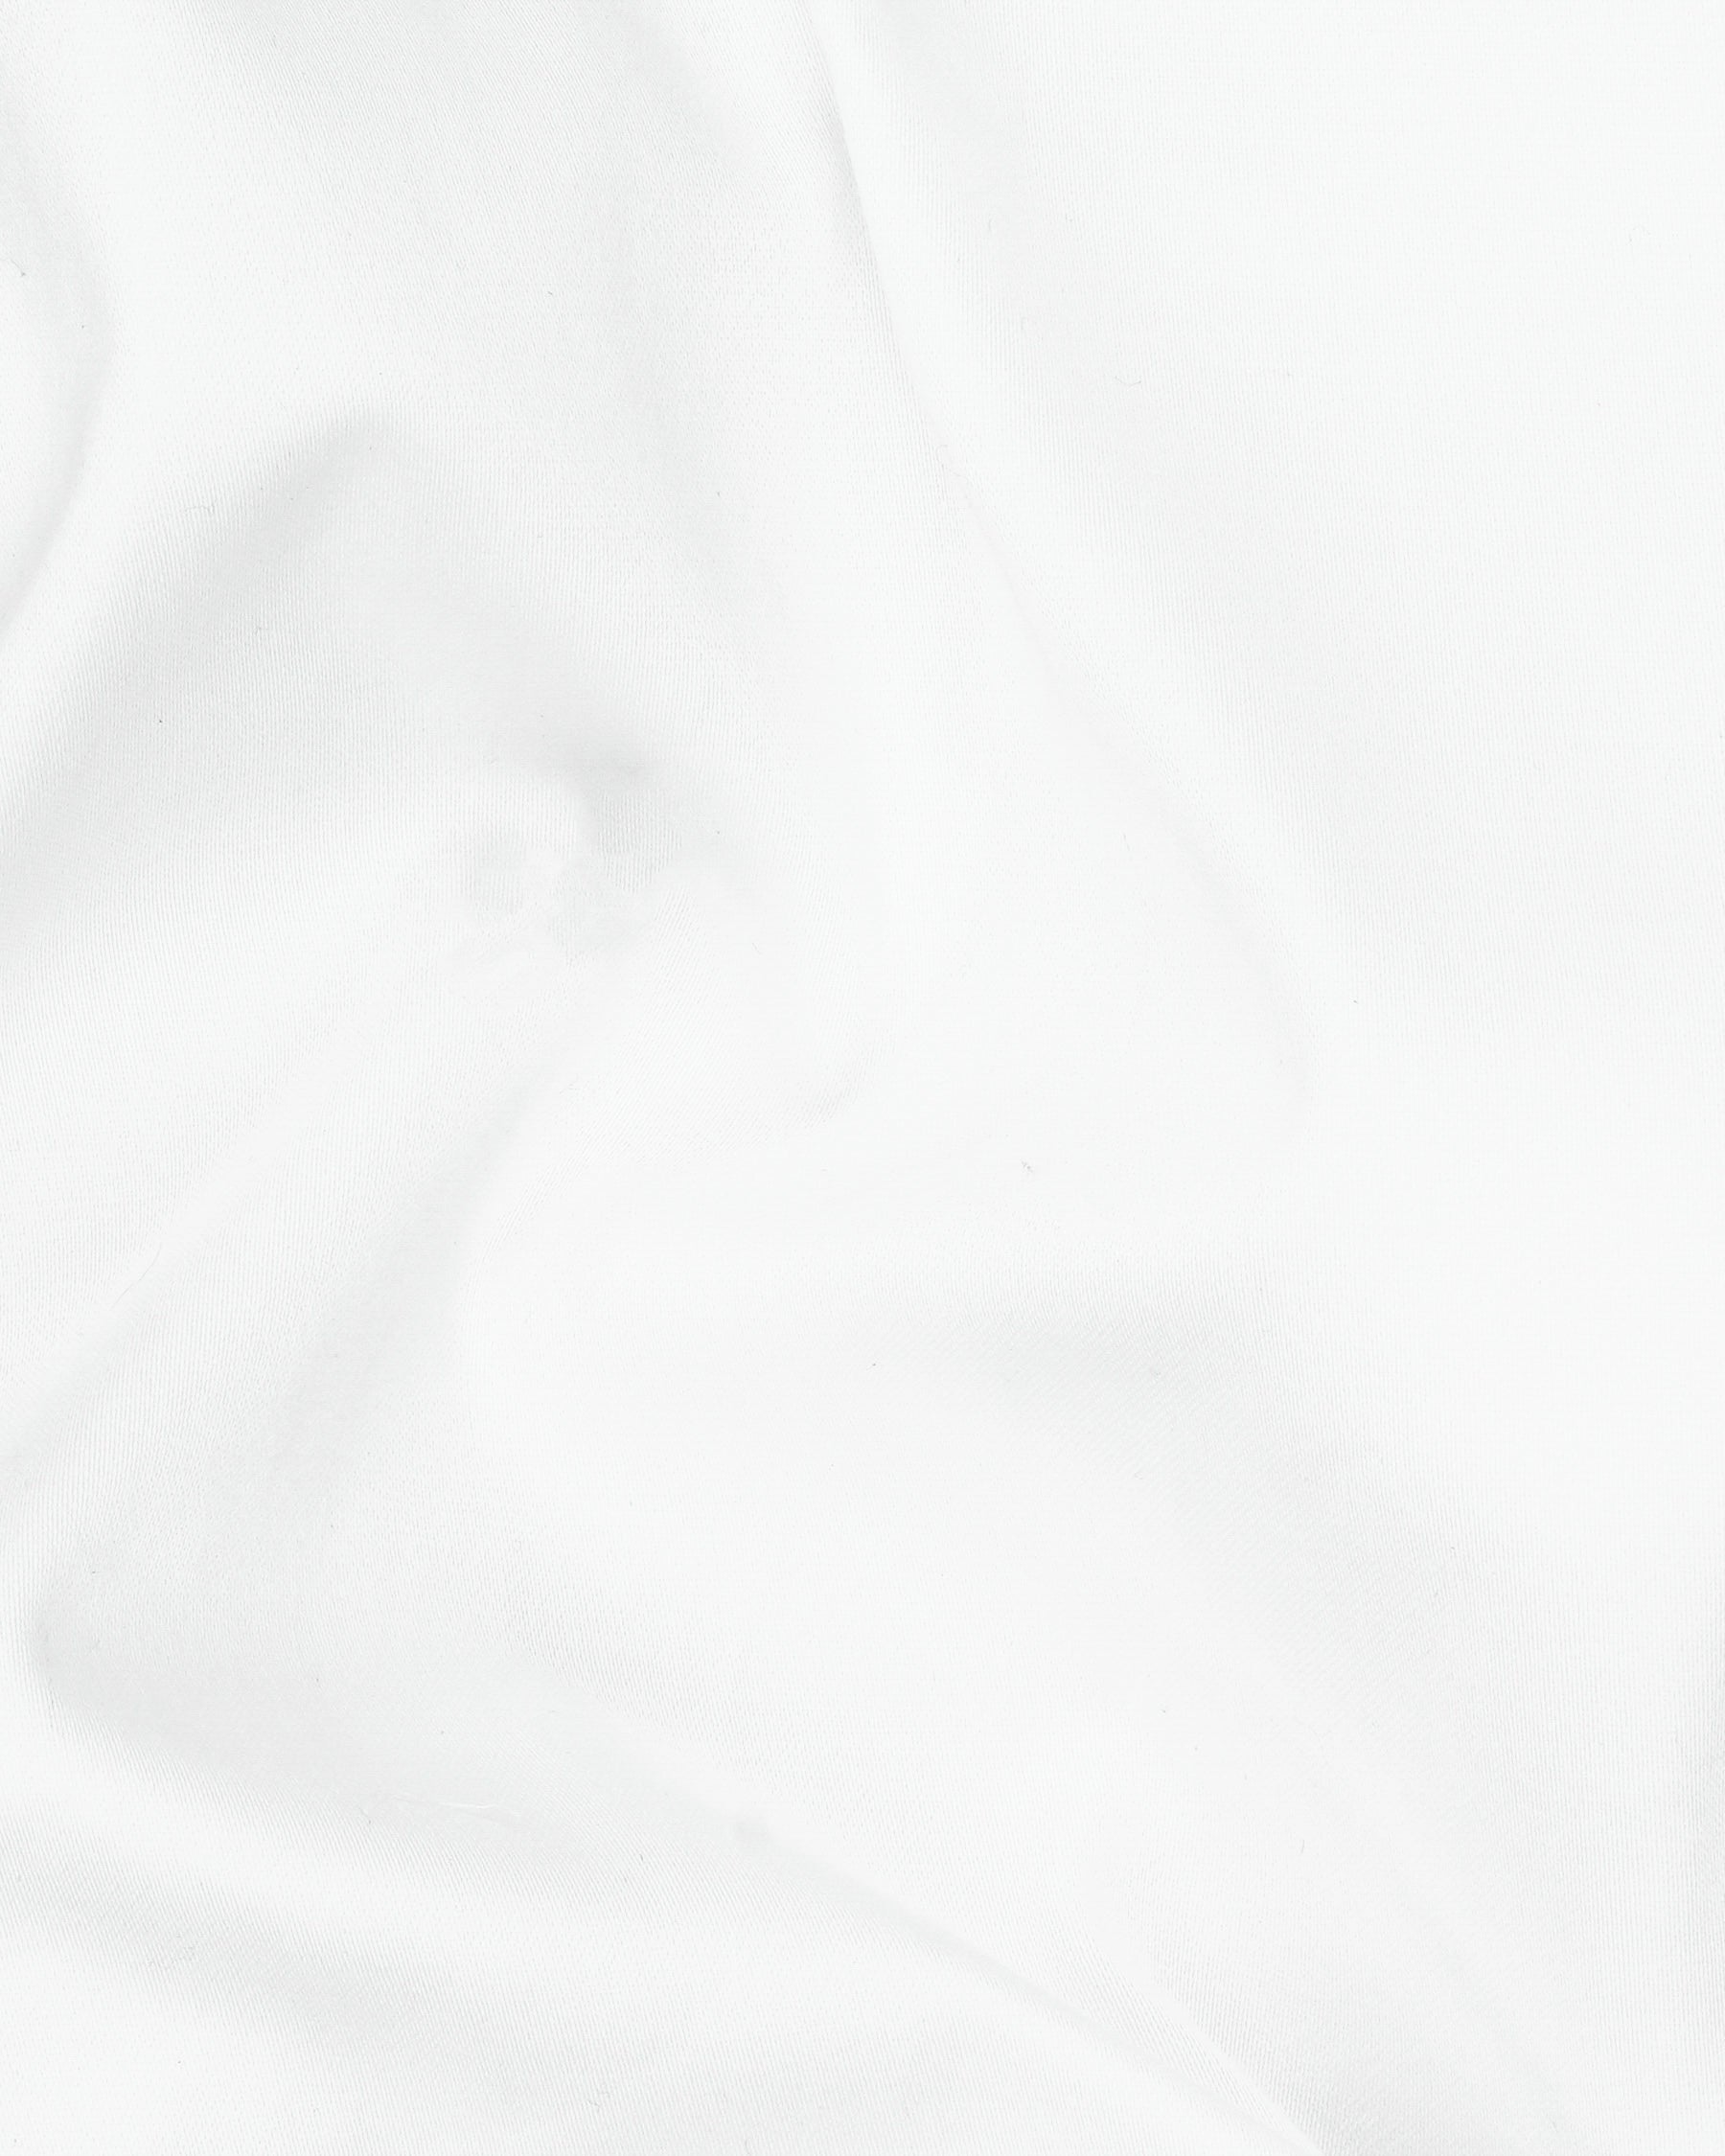 Bright White Subtle Sheen Waistcoat V158-36, V158-38, V158-40, V158-42, V158-44, V158-46, V158-48, V158-50, V158-52, V158-54, V158-56, V158-58, V158-60